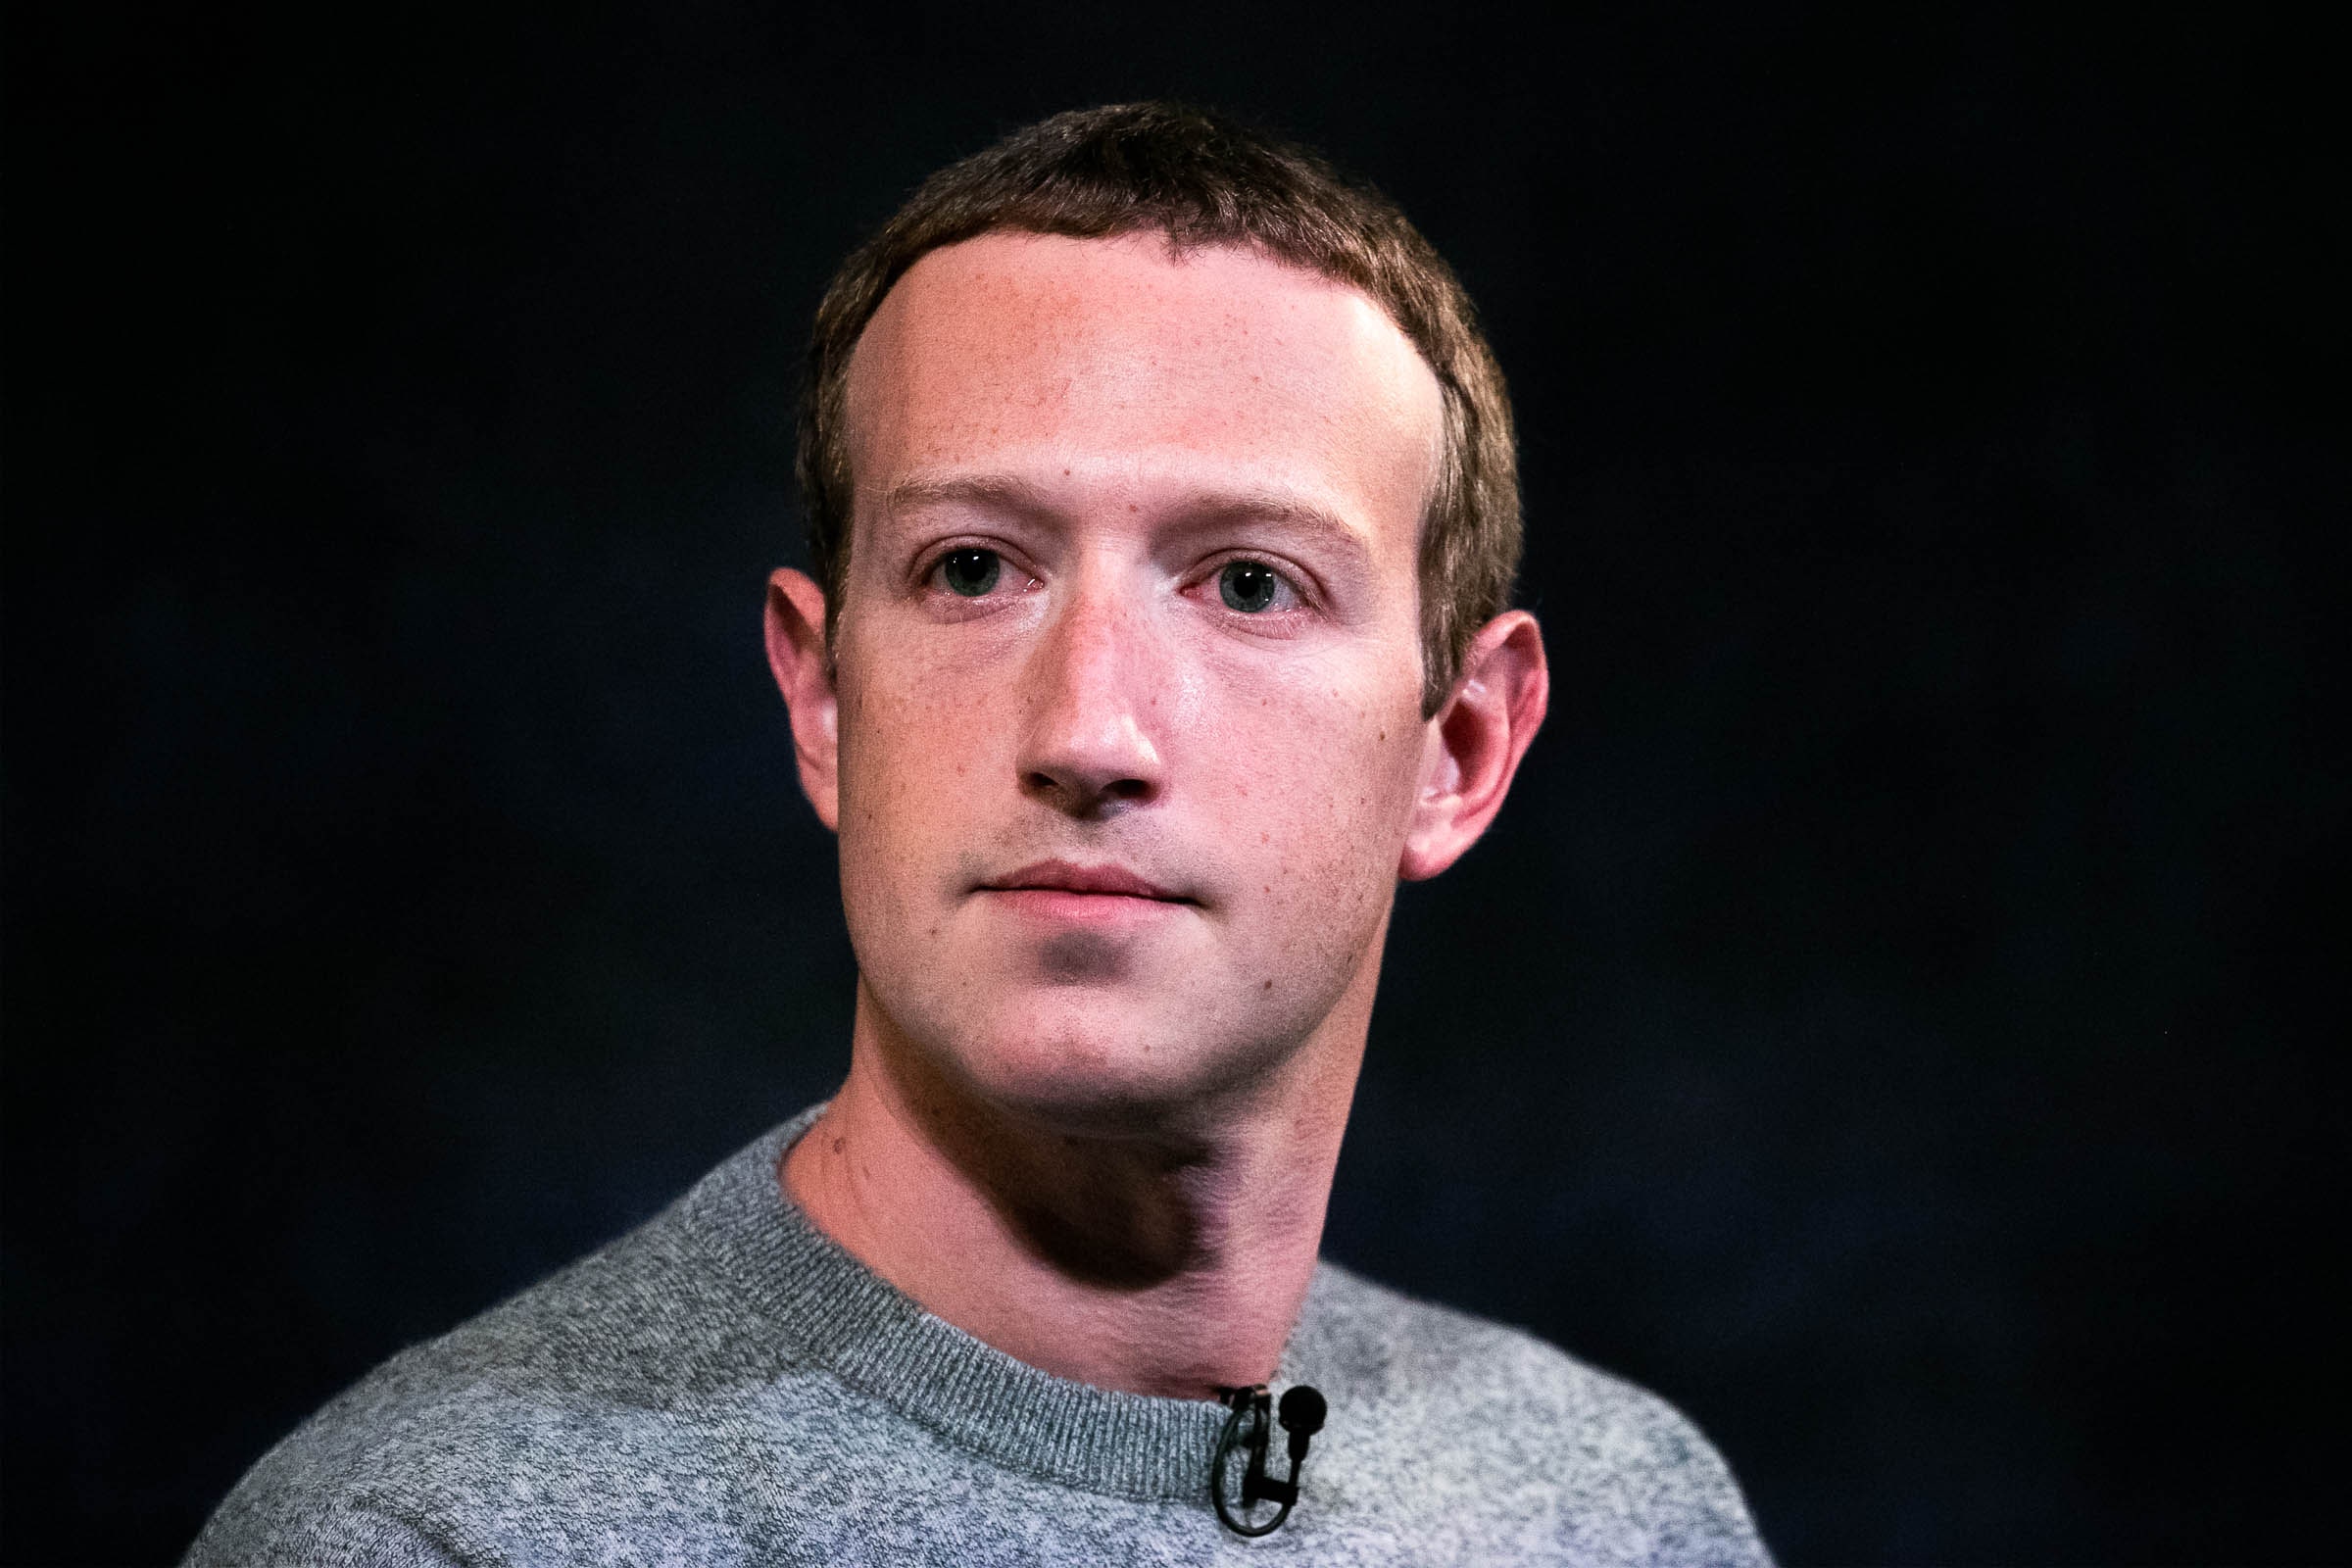   Tin tức y tế thế giới ngày 30/4: Nhà sáng lập Facebook cảnh báo mở cửa sớm ảnh hưởng nền kinh tế và sức khỏe  